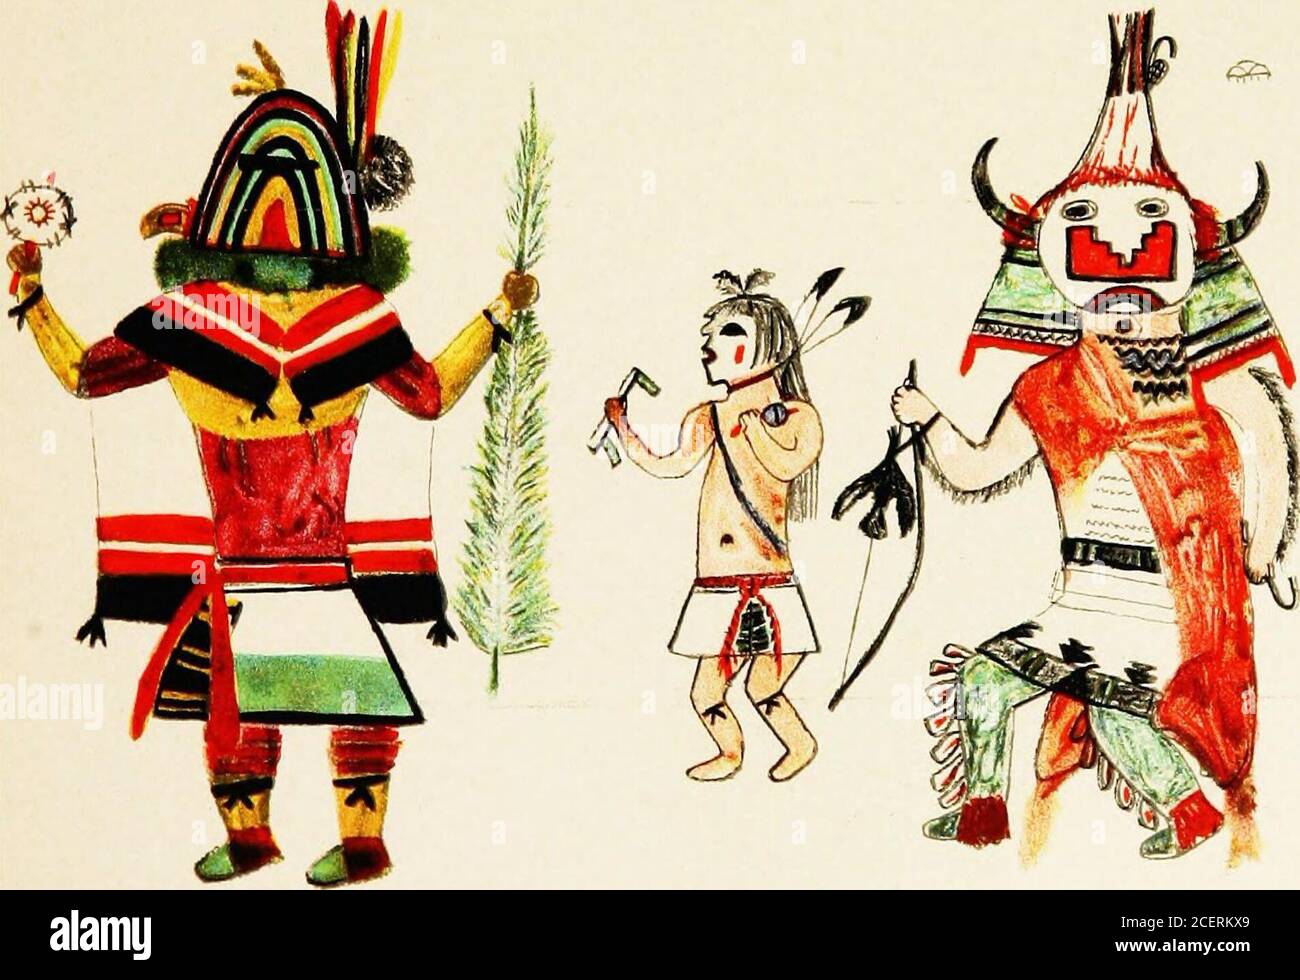 . Hopi Katcinas dessiné par des artistes autochtones. KOKLE. CITOTO SUMAIKOLI ET YAYA HELIOTYPE CO., BOSTON. FEWKES] KATCINAS APPARAISSANT EN PALClCKONTI 95 IIOKYANA MANA (Platf XXXIII) la femme de ménage ou la sœur de l'artiste précédent, tel que figuré l)y l'artiste Hopi, cheveux de hacher vêtus de la mode Zuni et porte une oreille de maïs à main levée. CAKWAHOXAfj (plate LXIII) la collection de katcina images aurait été augmenté severalfold weie nous inclure dans lui beaucoup qui sont des doublons dans ail i-espectssave couleur. Il peut être tenu à l'esprit que, tandis que presque tous ces beingshave jaune, vert, rouge, et blanc variantes, comme Banque D'Images